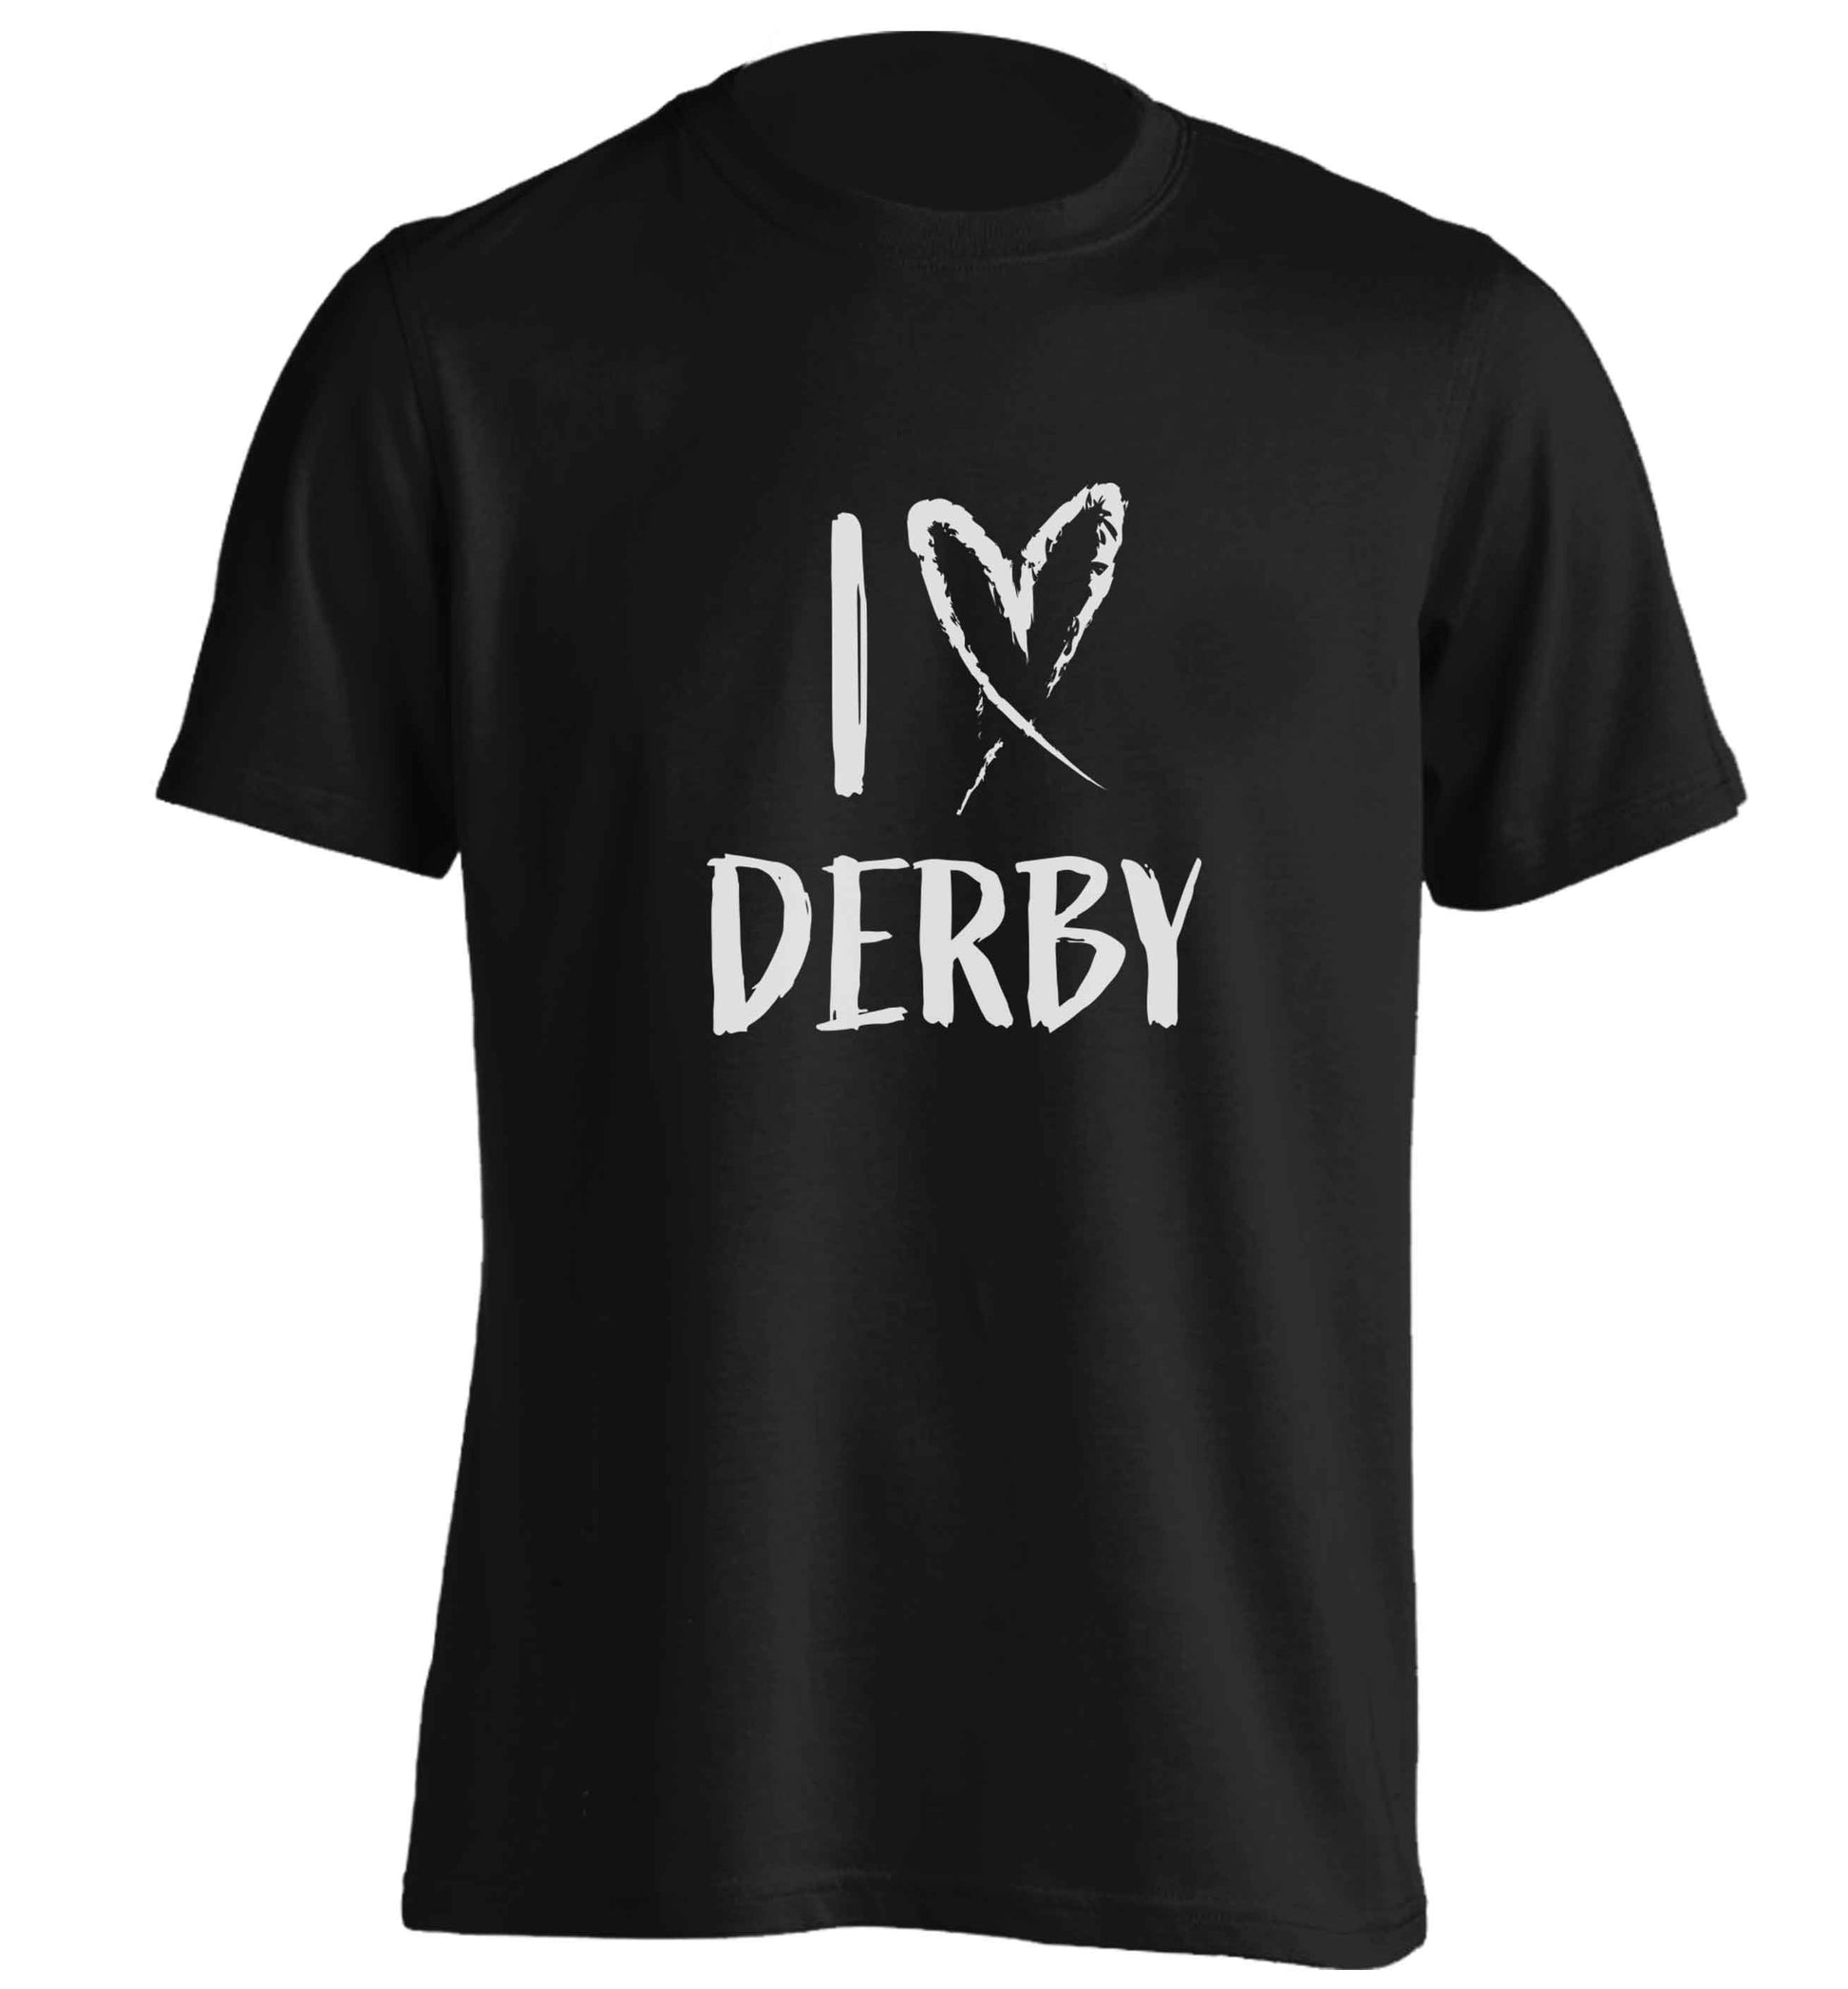 I love Derby adults unisex black Tshirt 2XL